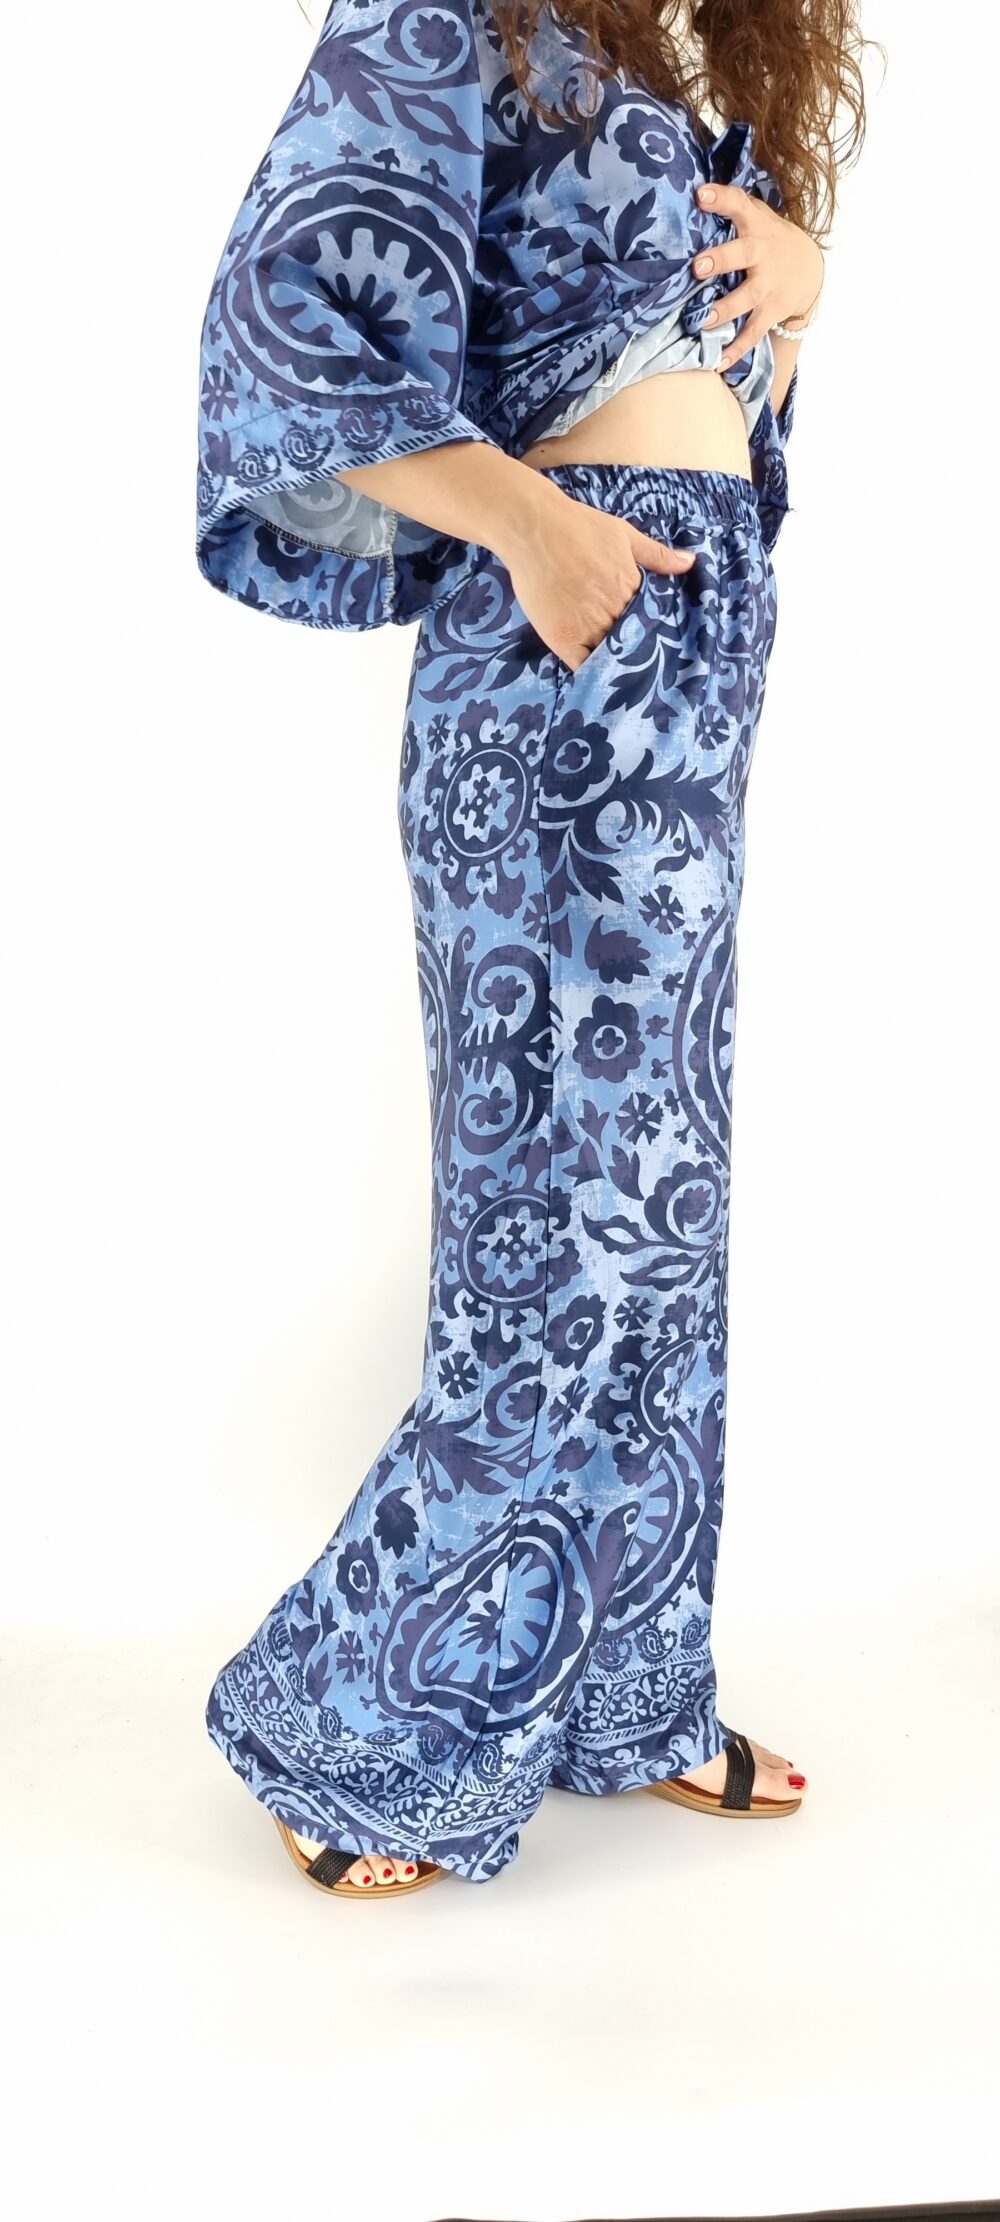 Σετ με κιμωνό και παντελόνα με λάστιχο στη μέση με ιδιαίτερα σχέδια μπλε